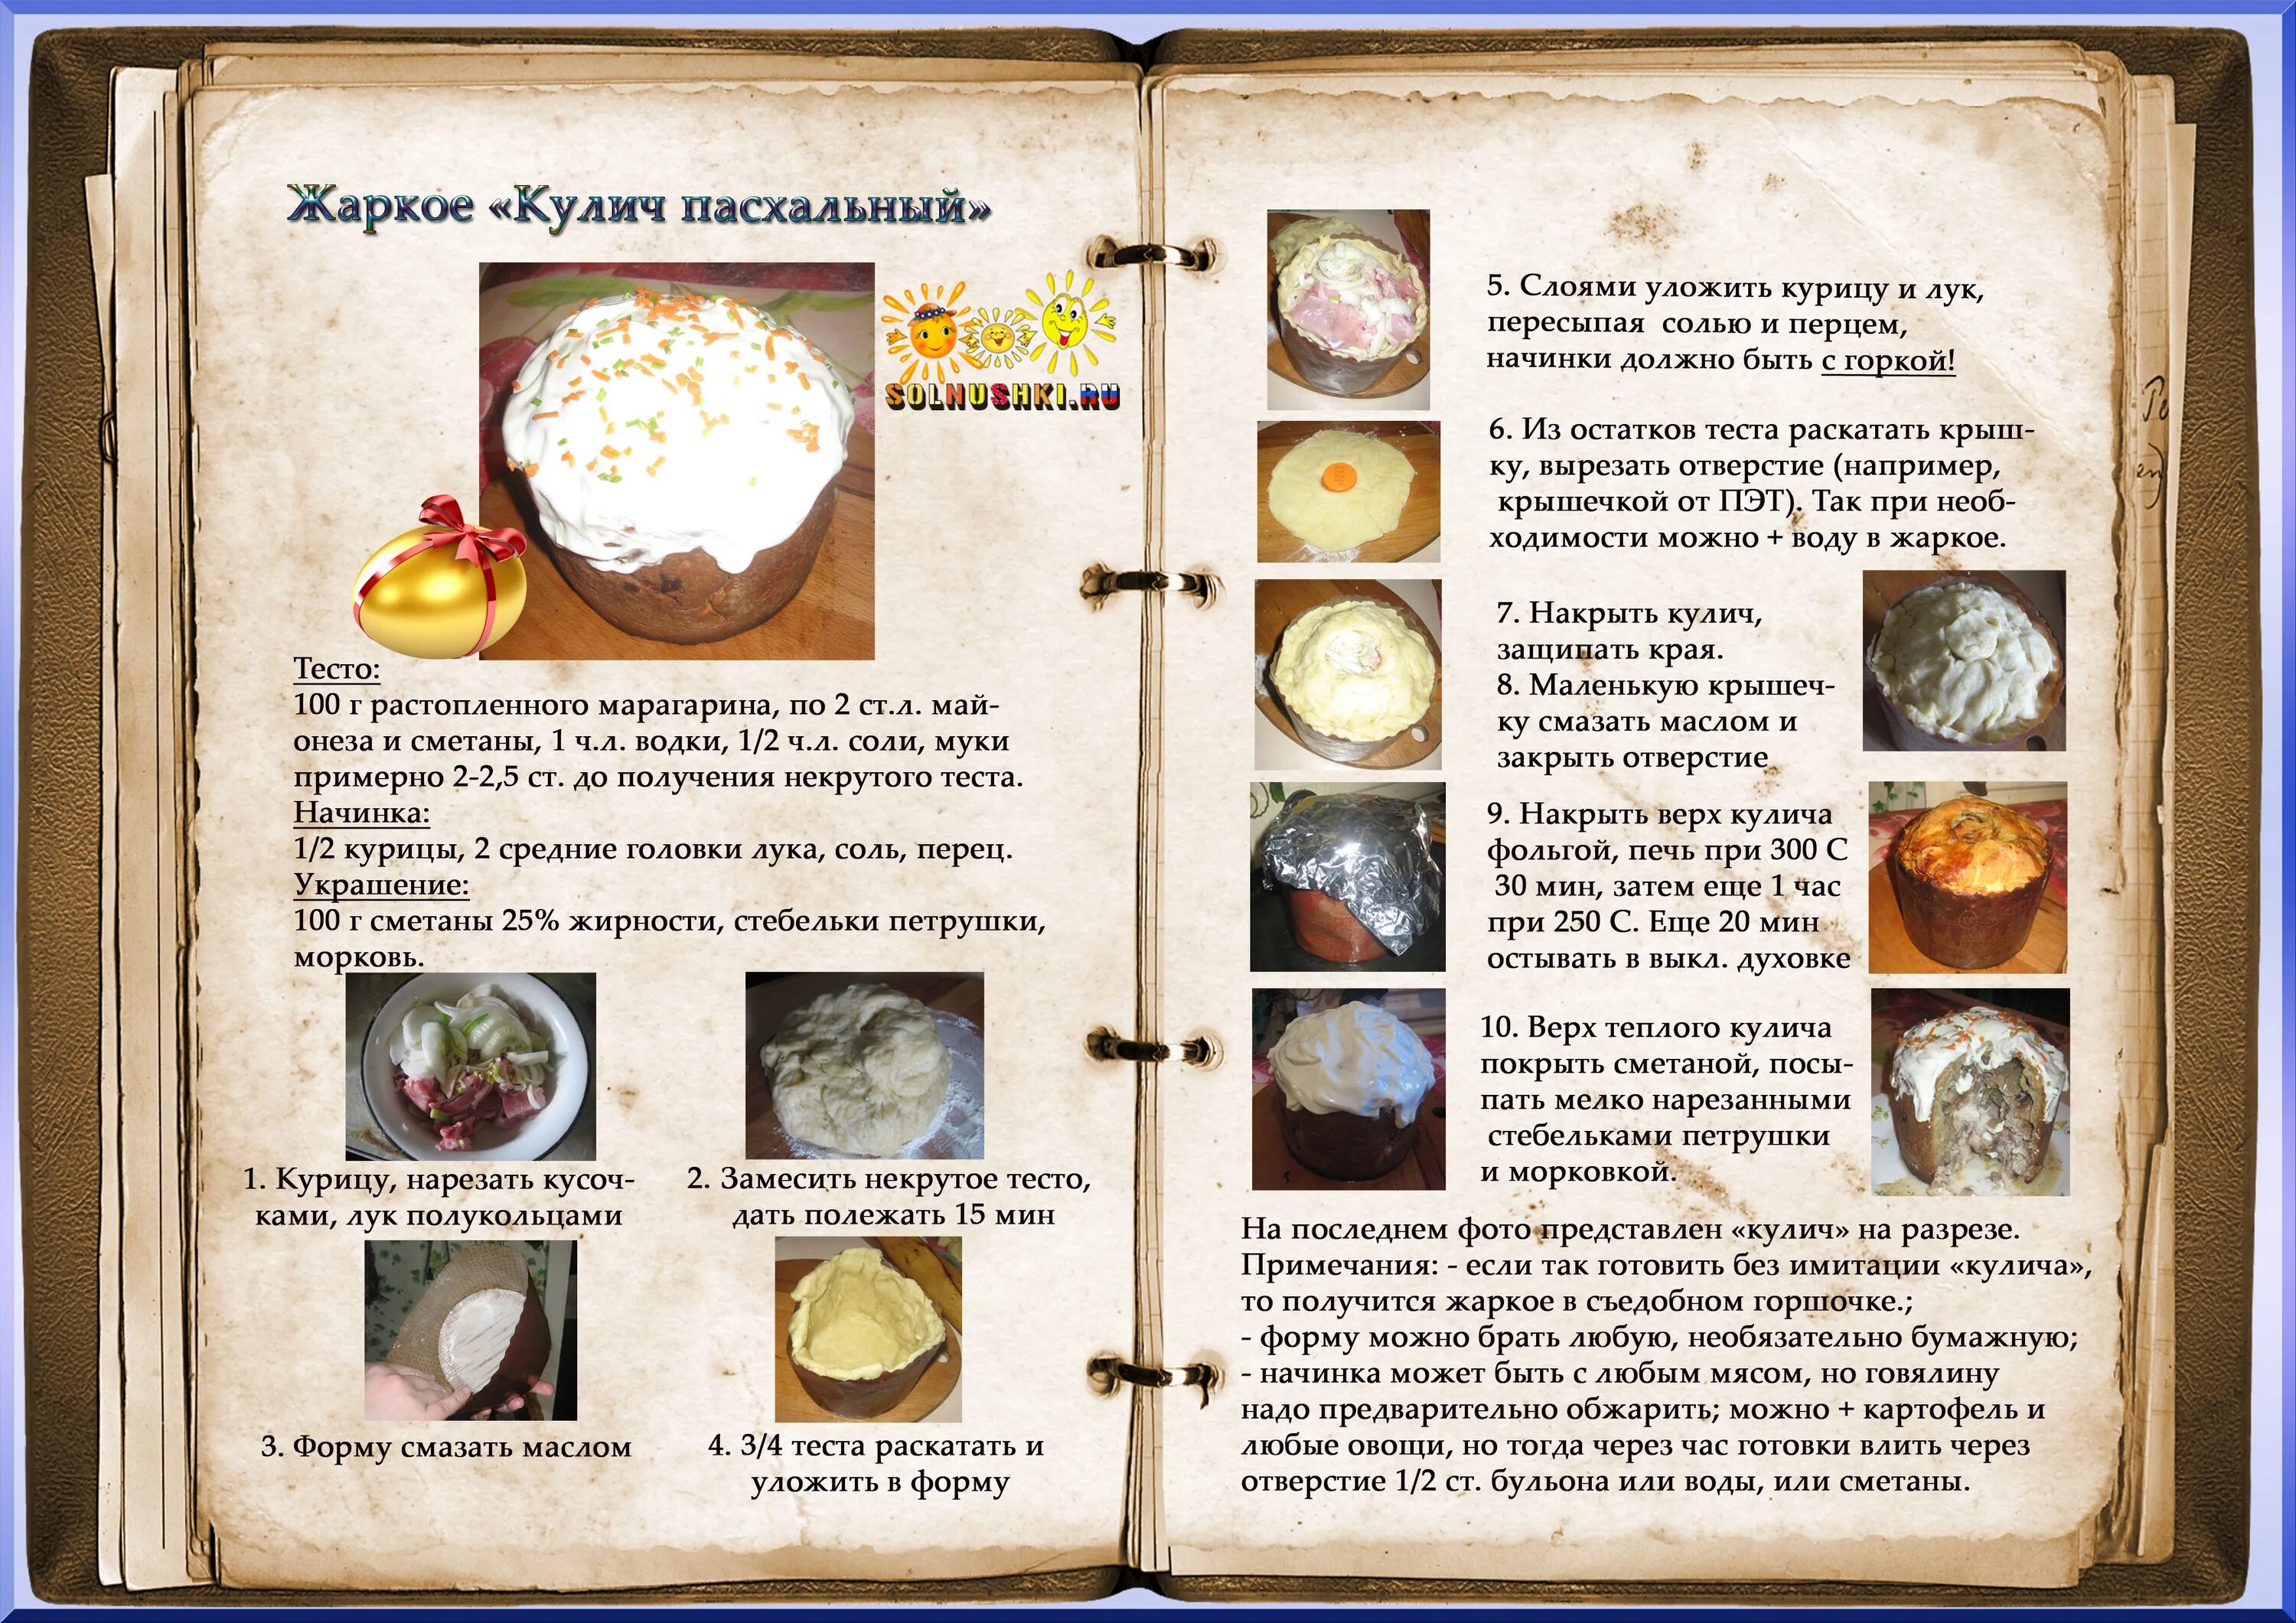 Оформление книги рецептов. Старые рецепты. Кулинария рецепты с фотографиями. Пасхальный кулич рецепты из книги.